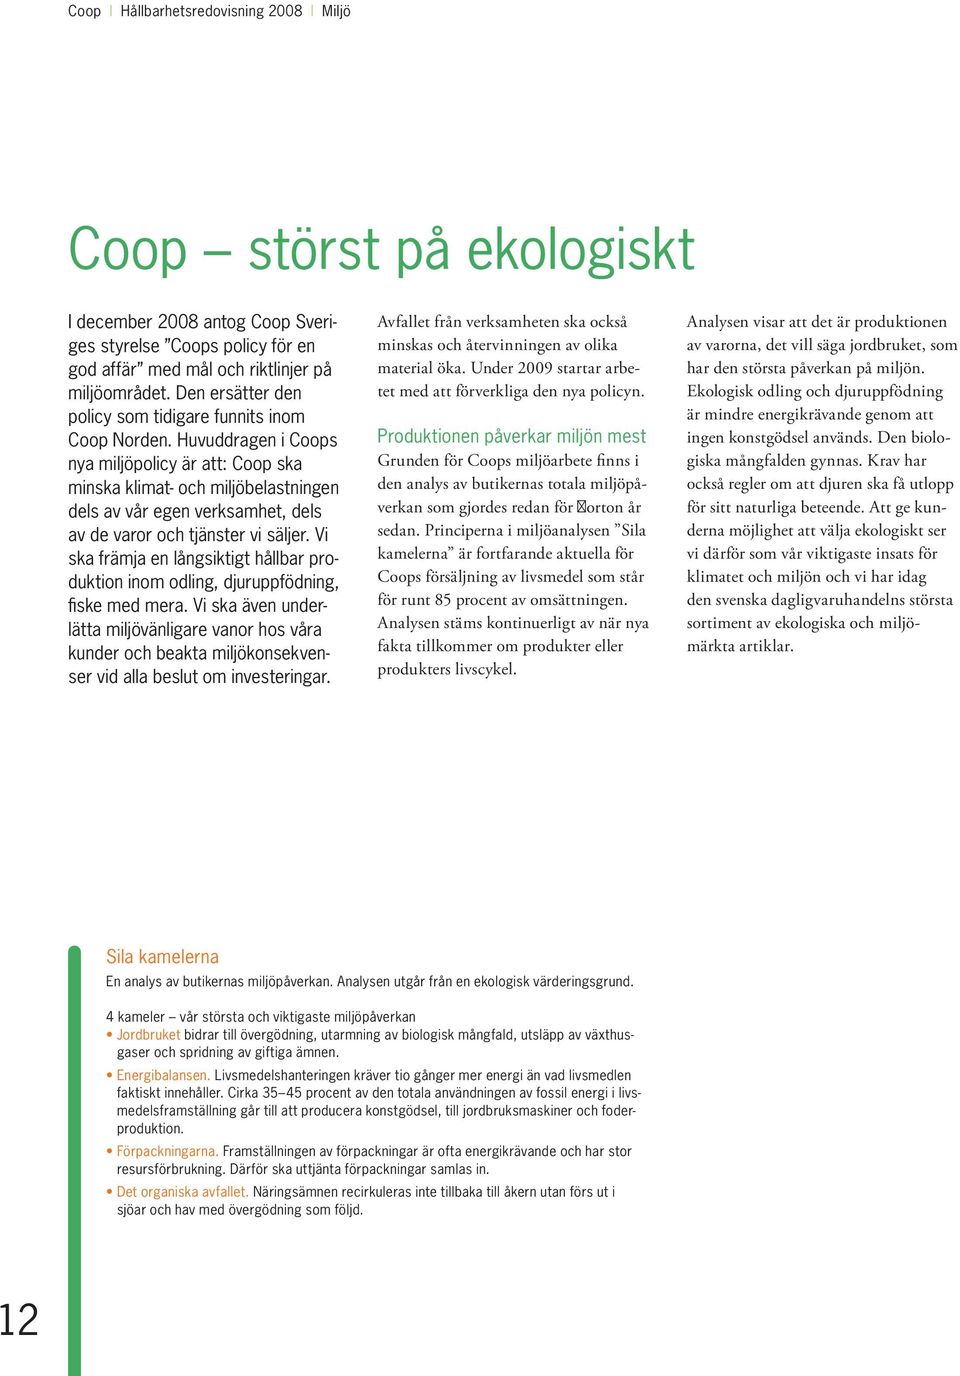 Huvuddragen i Coops nya miljöpolicy är att: Coop ska minska klimat- och miljöbelastningen dels av vår egen verksamhet, dels av de varor och tjänster vi säljer.